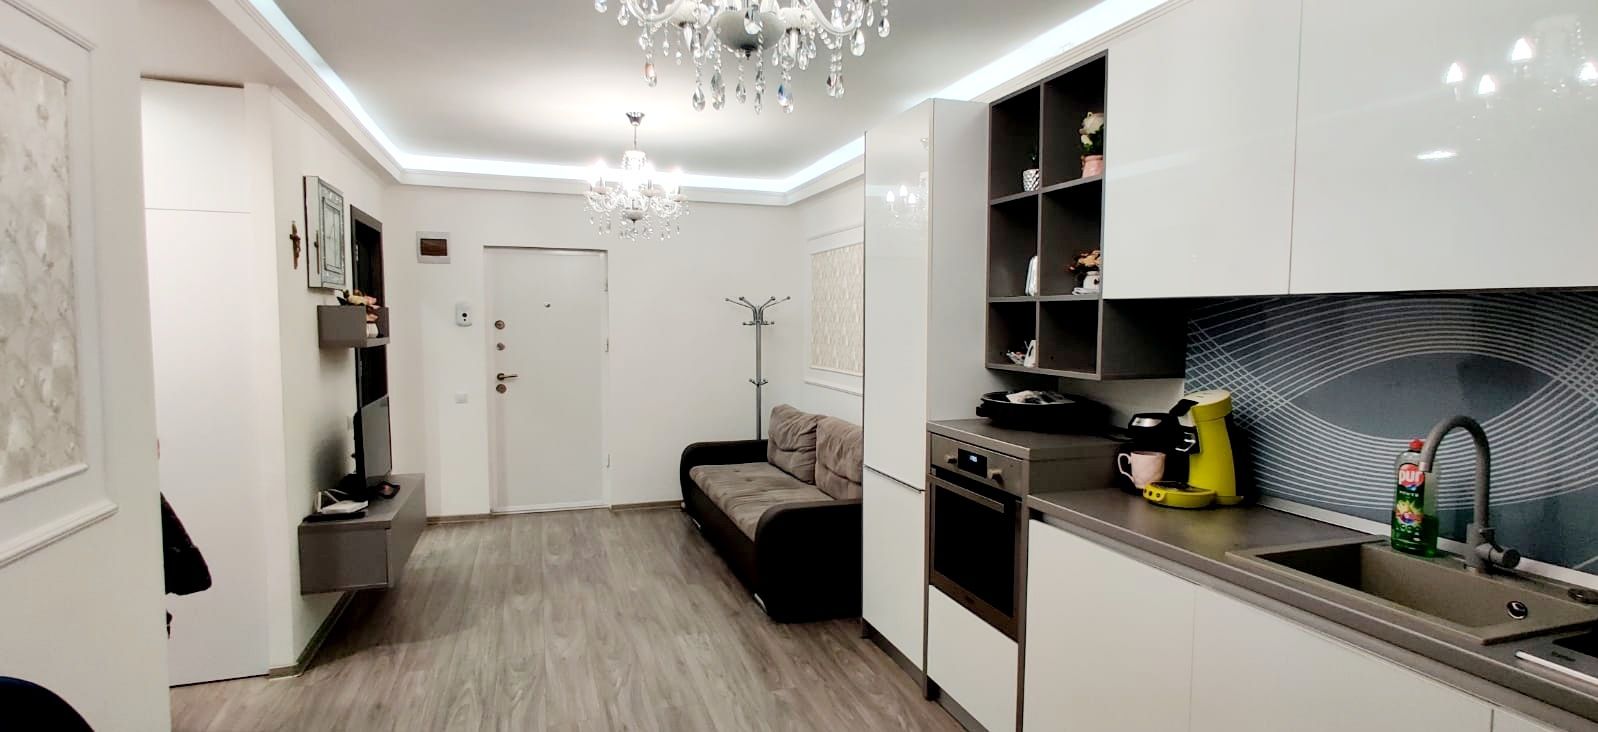 Apartament semidecomandat de vanzare, cu 3 camere, in zona BMW, Cluj Napoca S14491